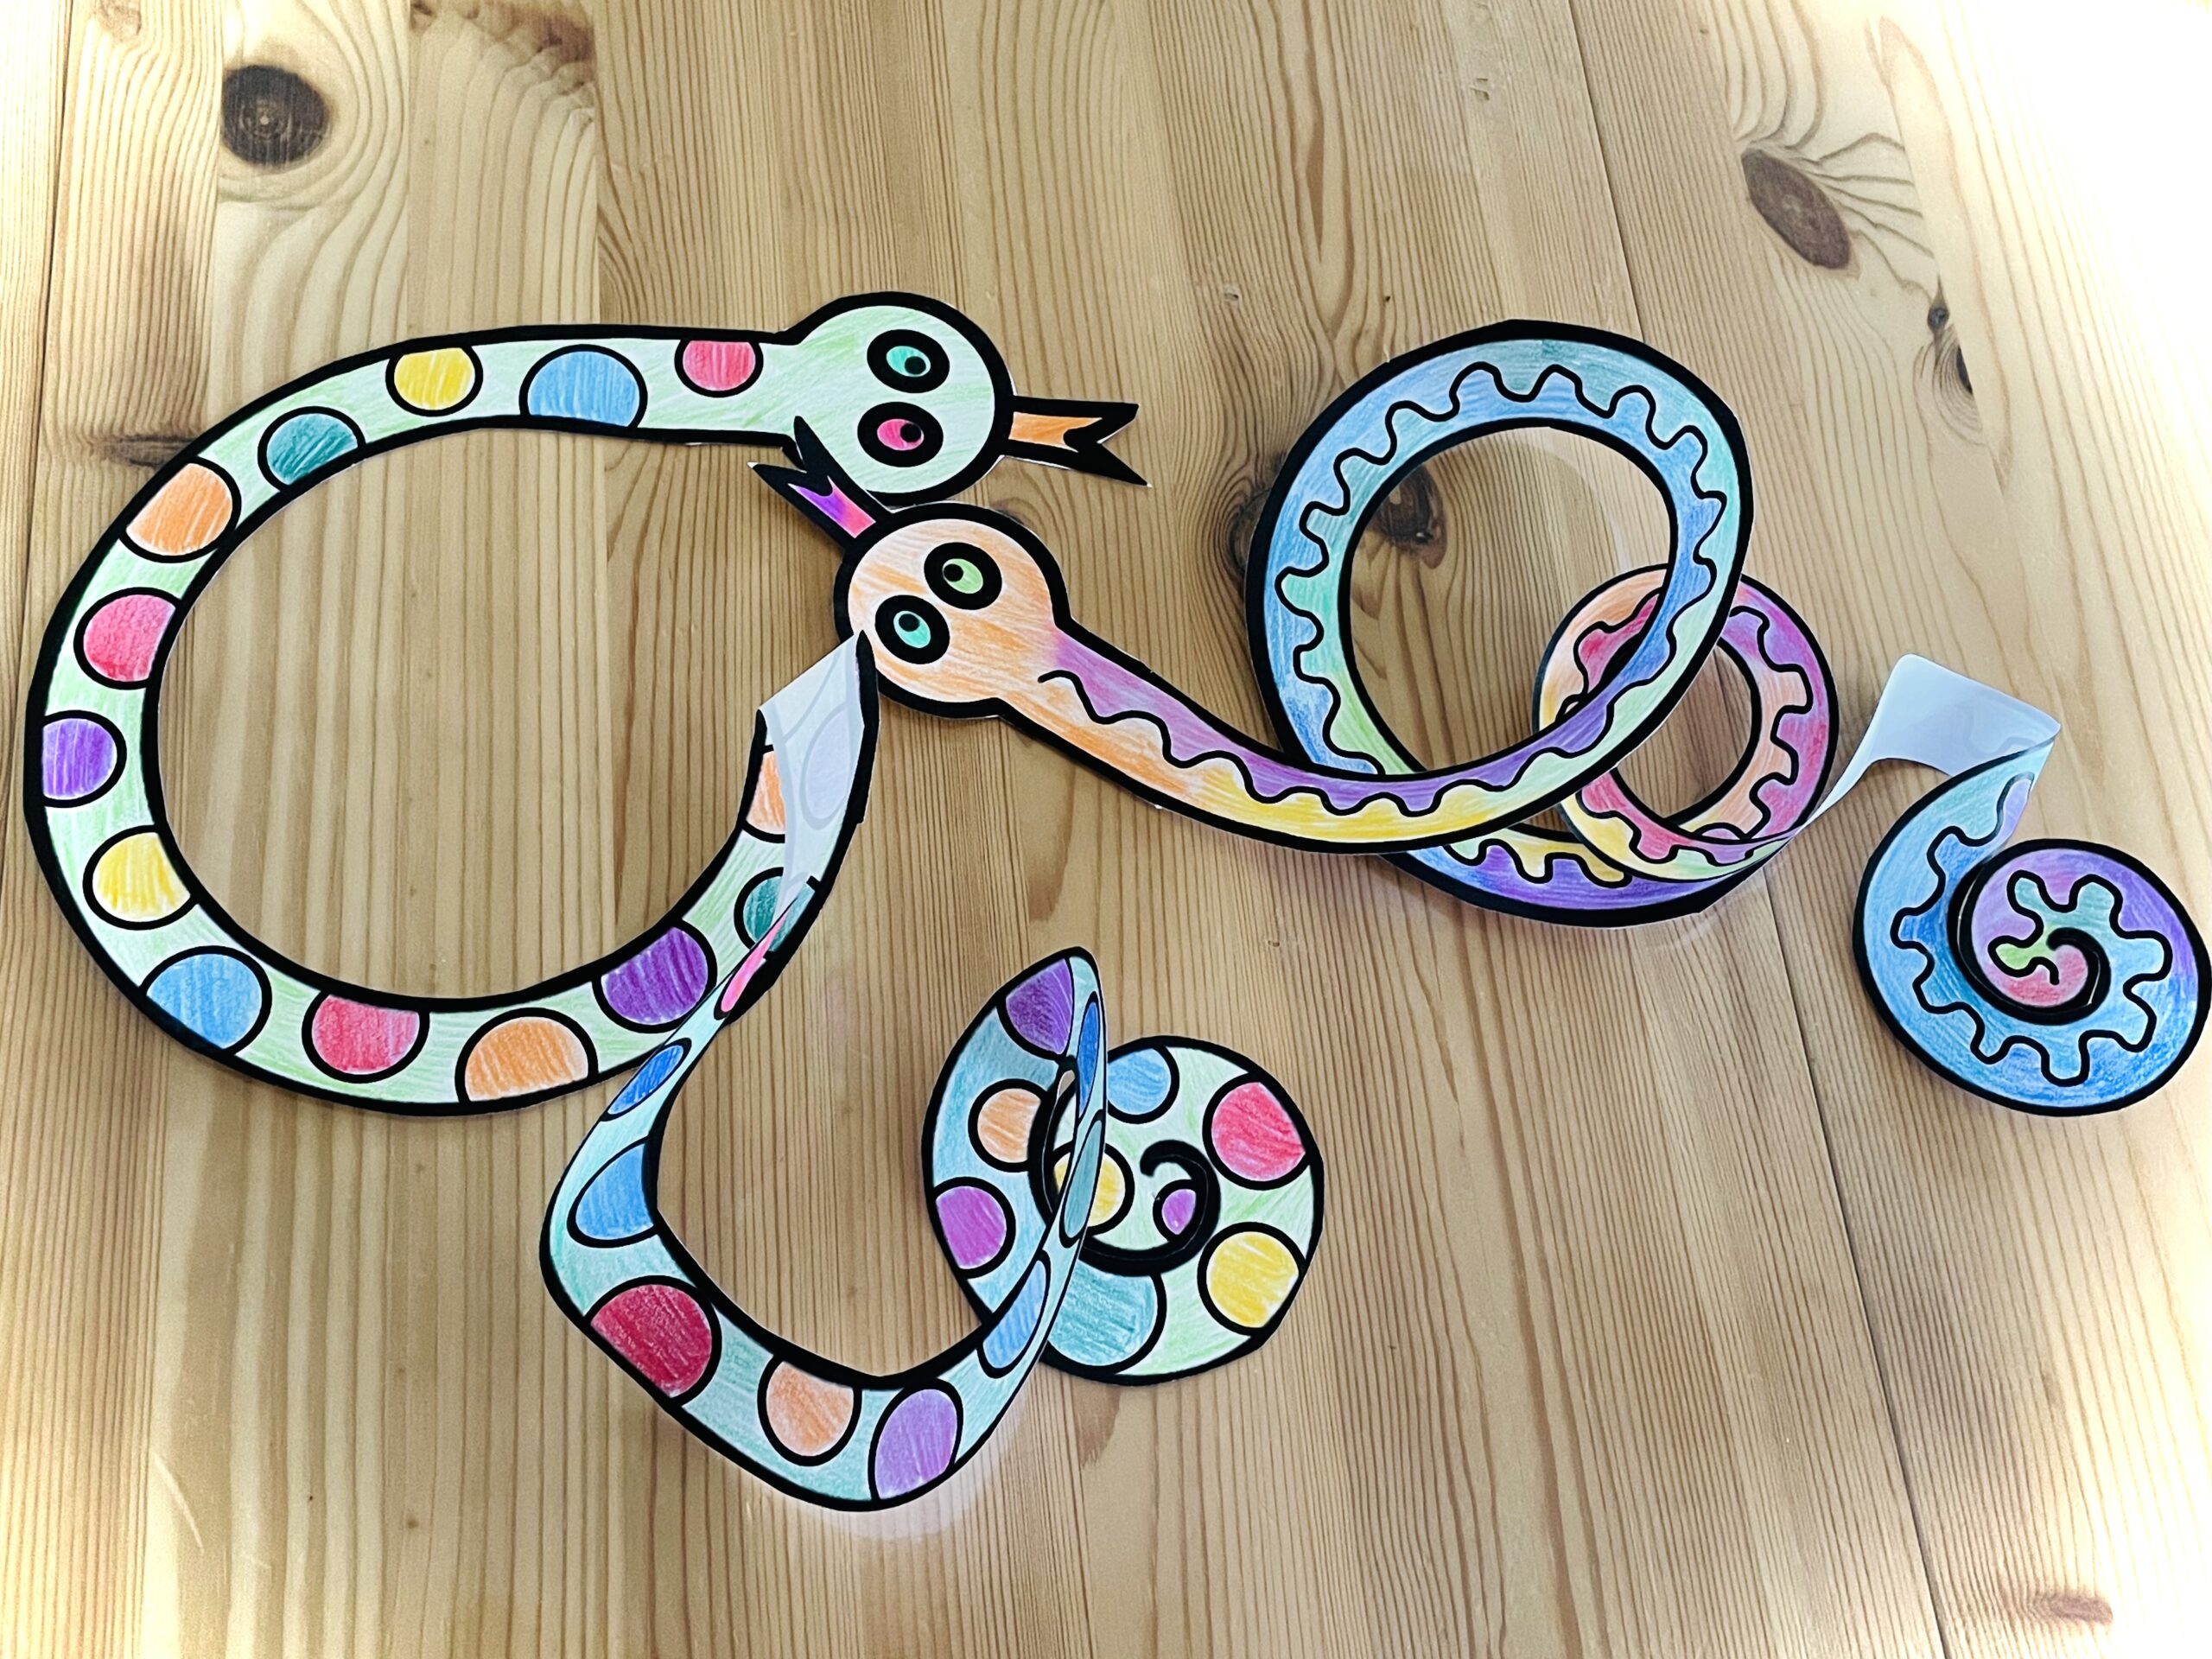 Bild zum Schritt 16 für das Bastel- und DIY-Abenteuer für Kinder: 'Dekoriert die bunten Faschings-Schlangen am Esstisch.'